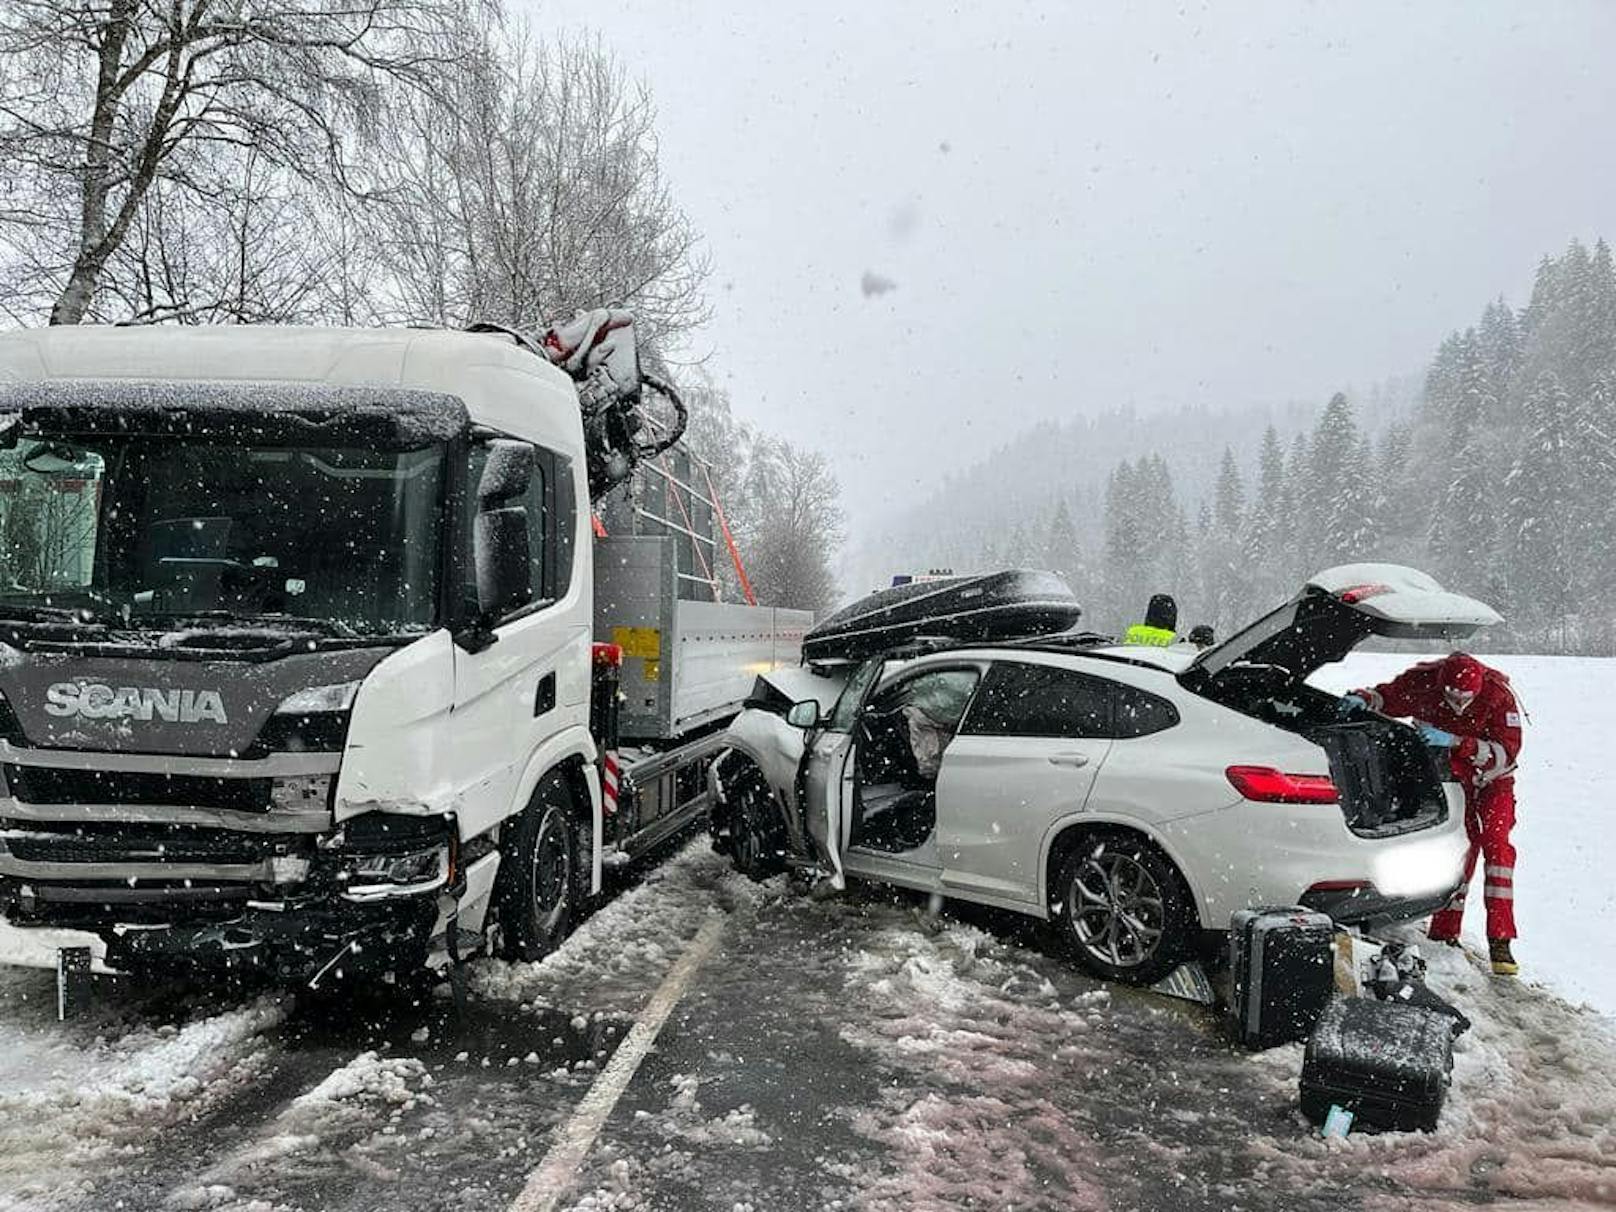 Verkehrsunfall auf der Hochkönigstrasse in Fieberbrunn (T) aufgrund winterlicher Fahrbahnverhältnisse. (2. Februar 2023)